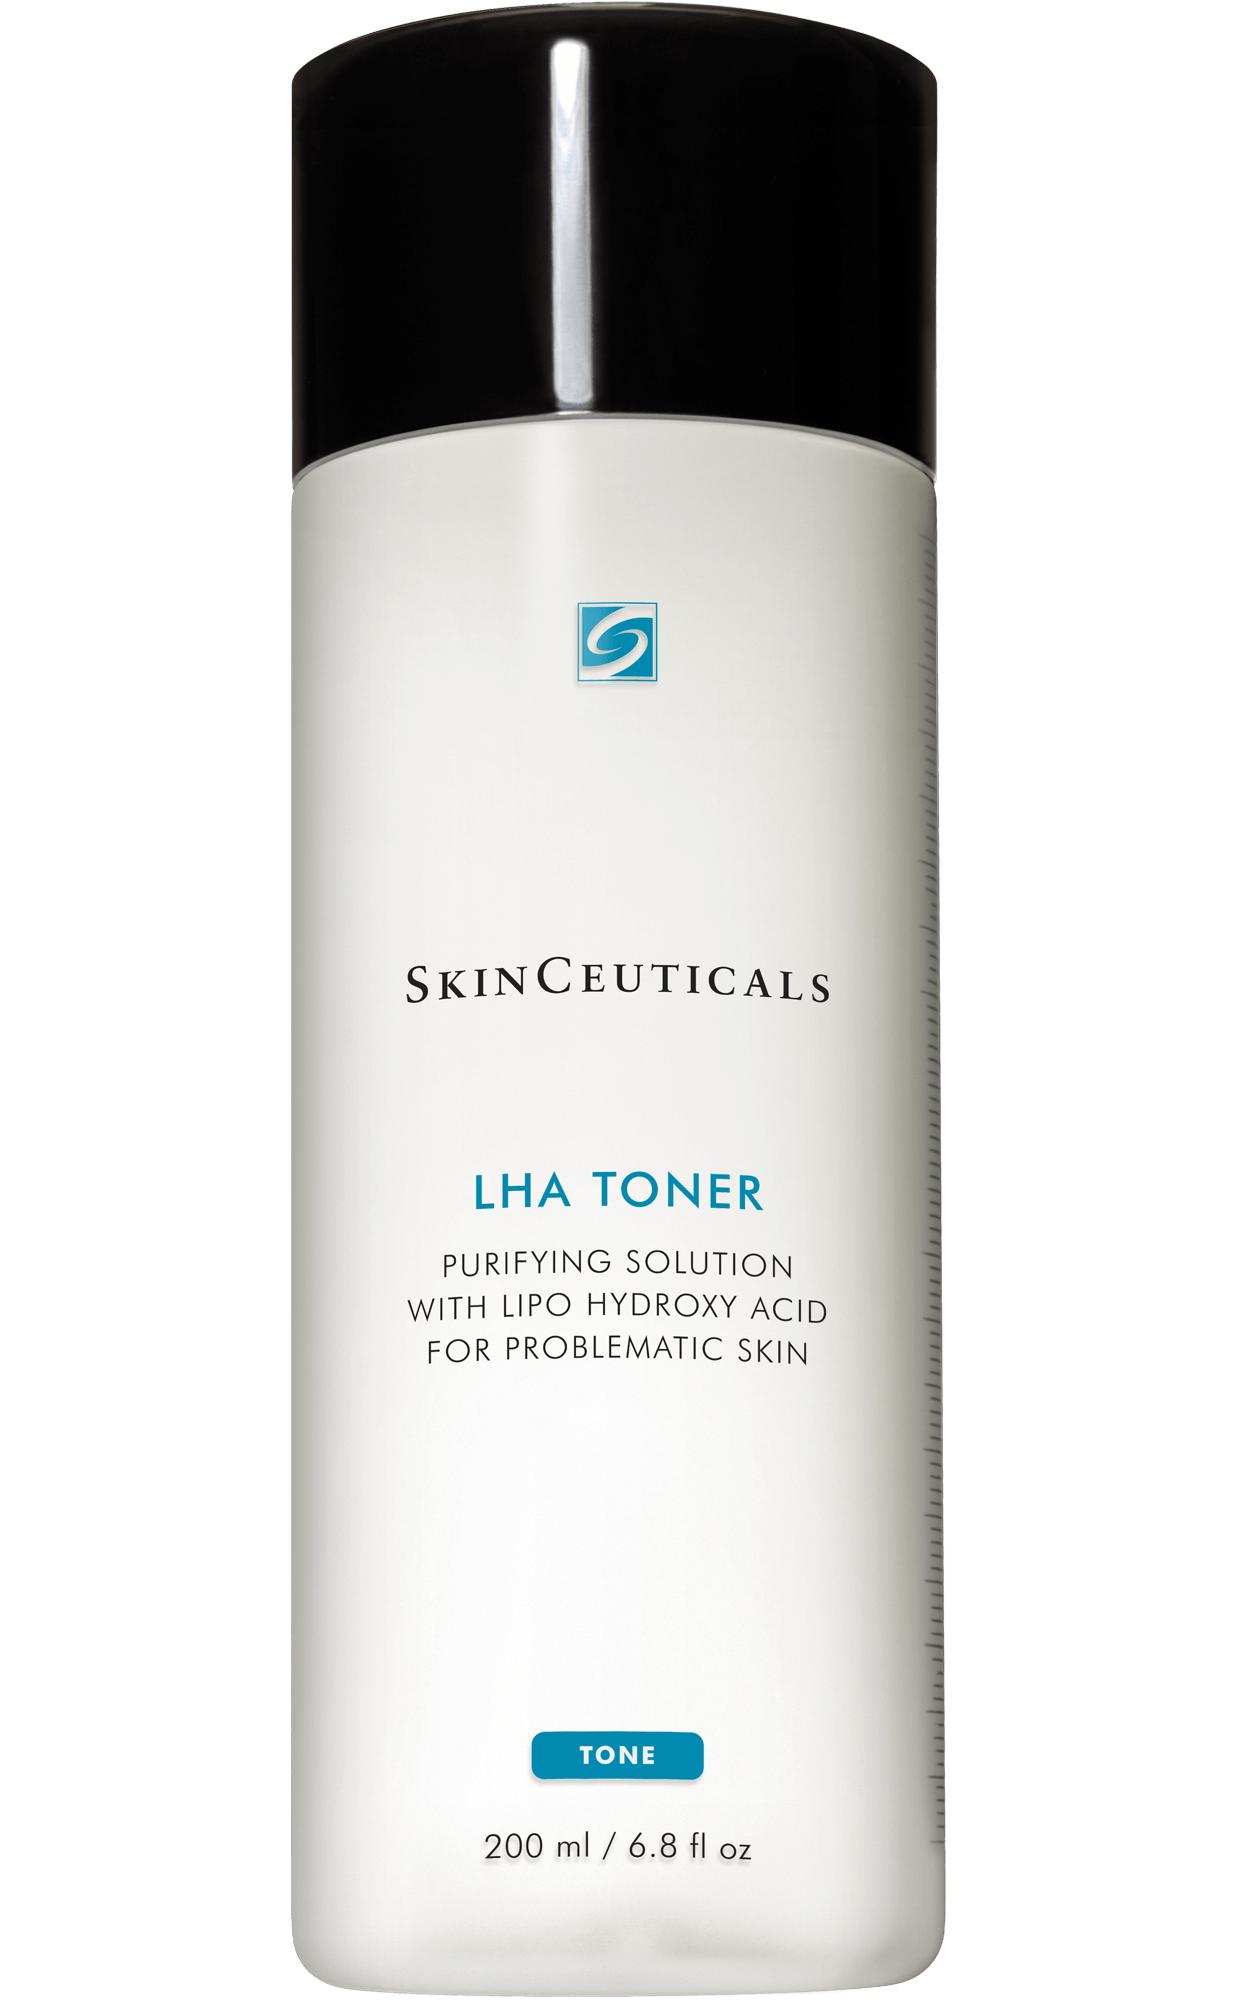 SkinCeuticals LHA Toner Product